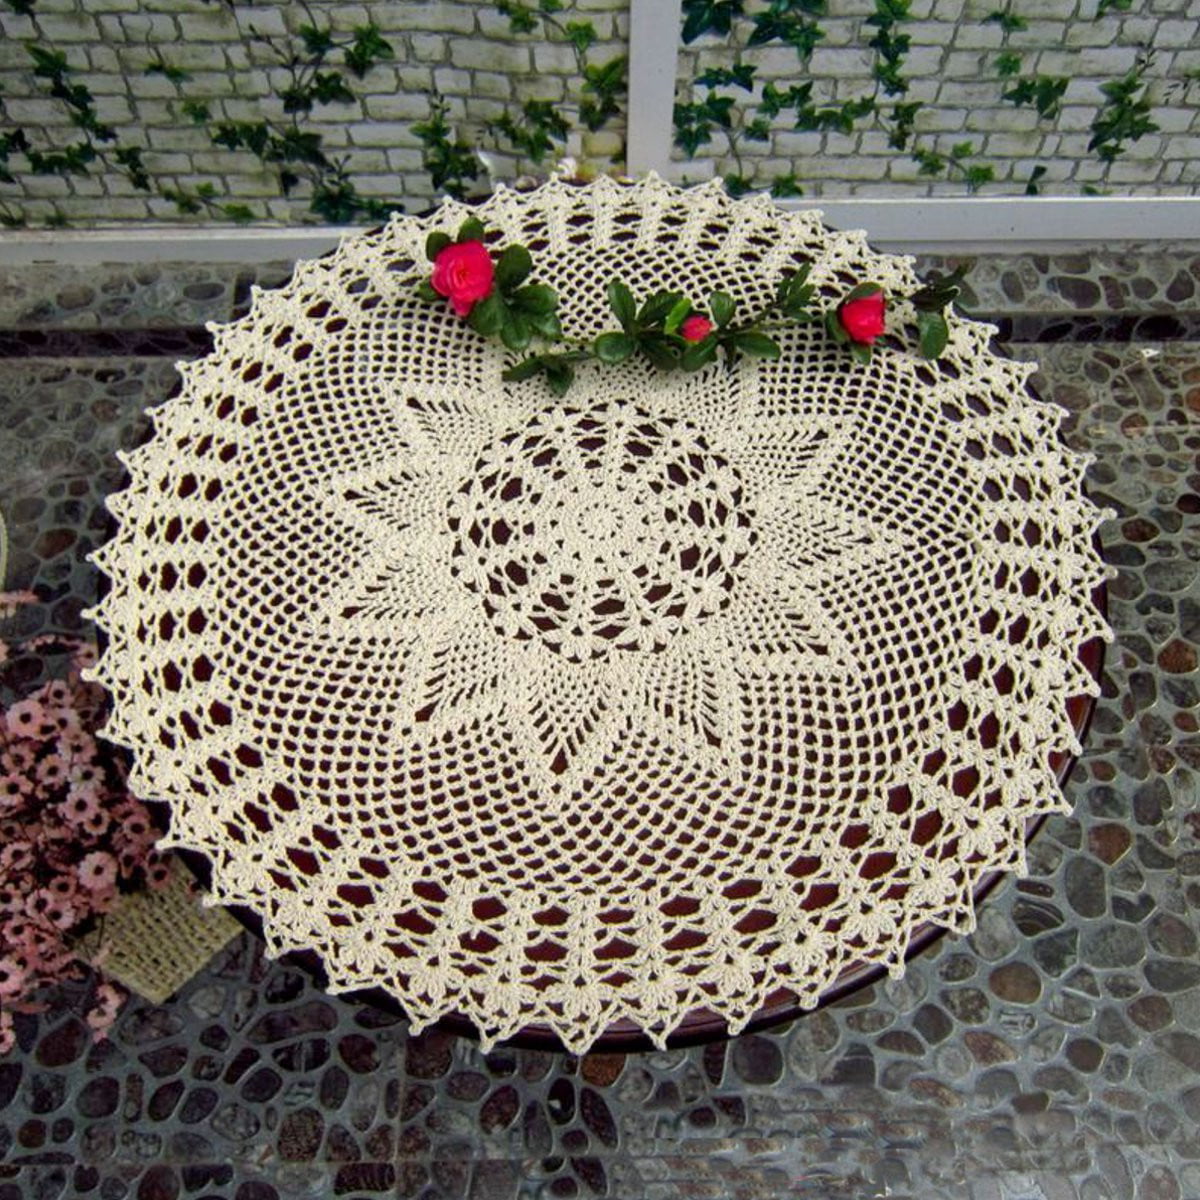 Vintage Floral Hand Crochet Cotton Lace Doily Round Flower Table Placemat Mat 